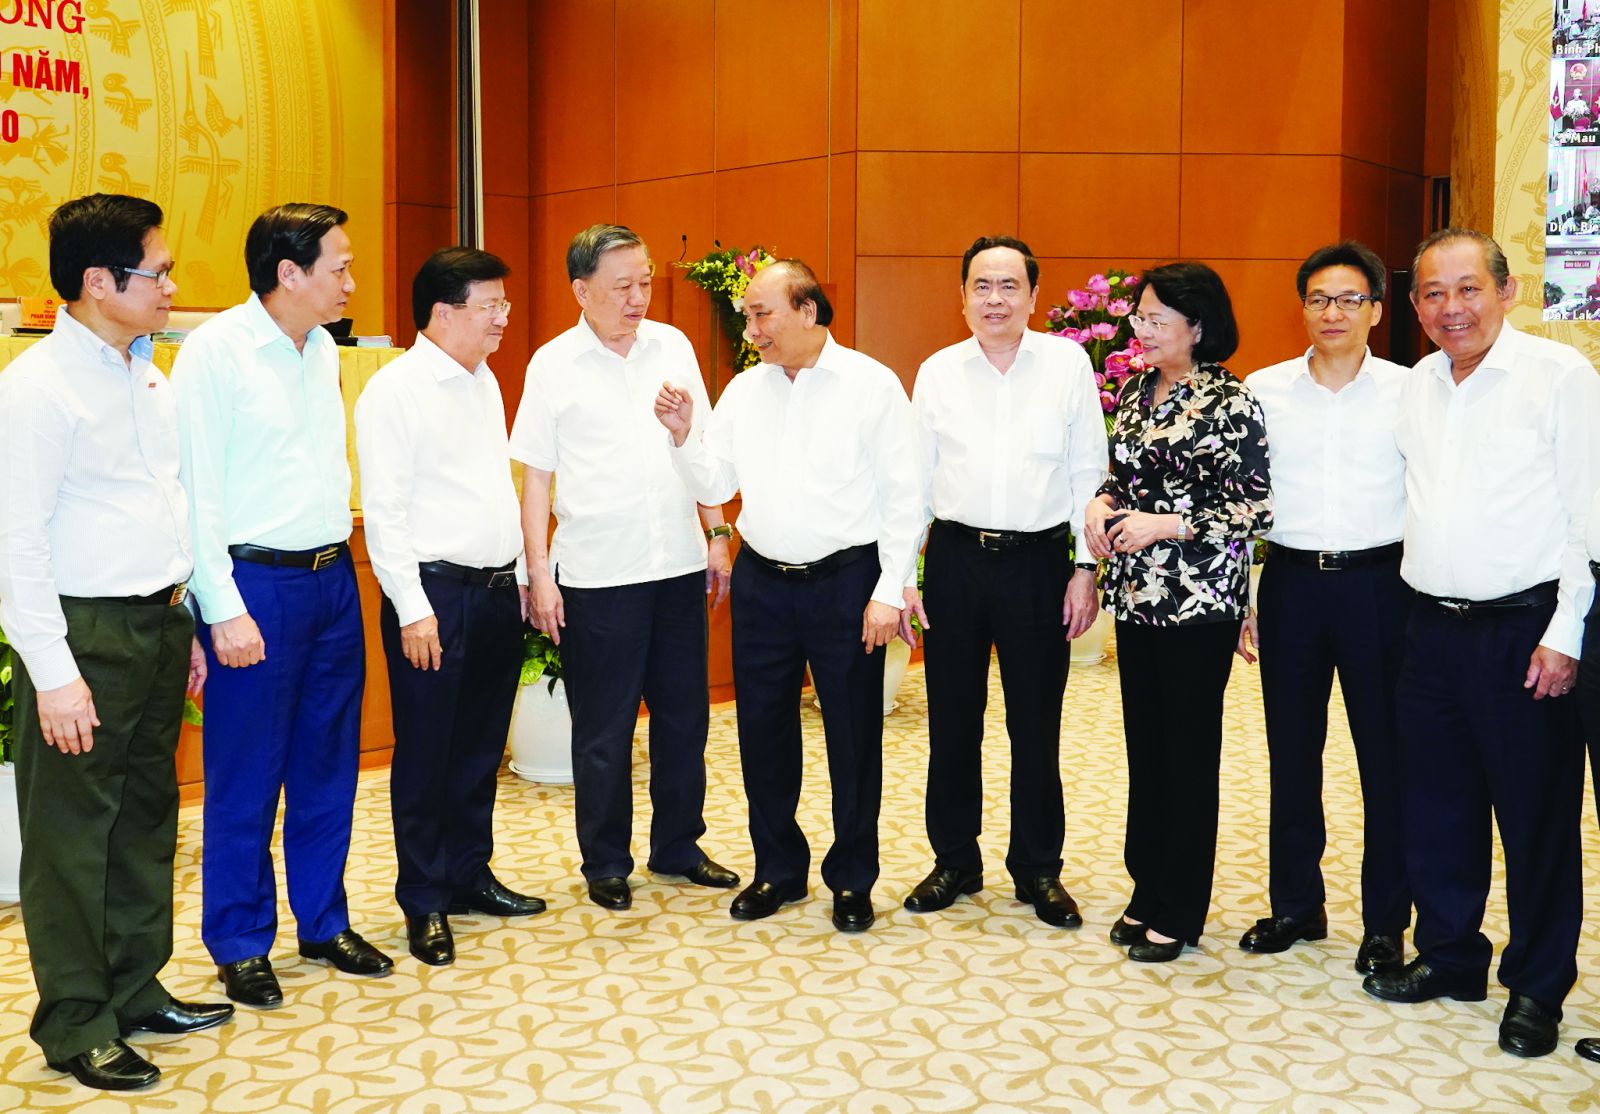  Thủ tướng trao đổi cùng các đại biểu dự hội nghị. Ảnh: VGP/Quang Hiếu